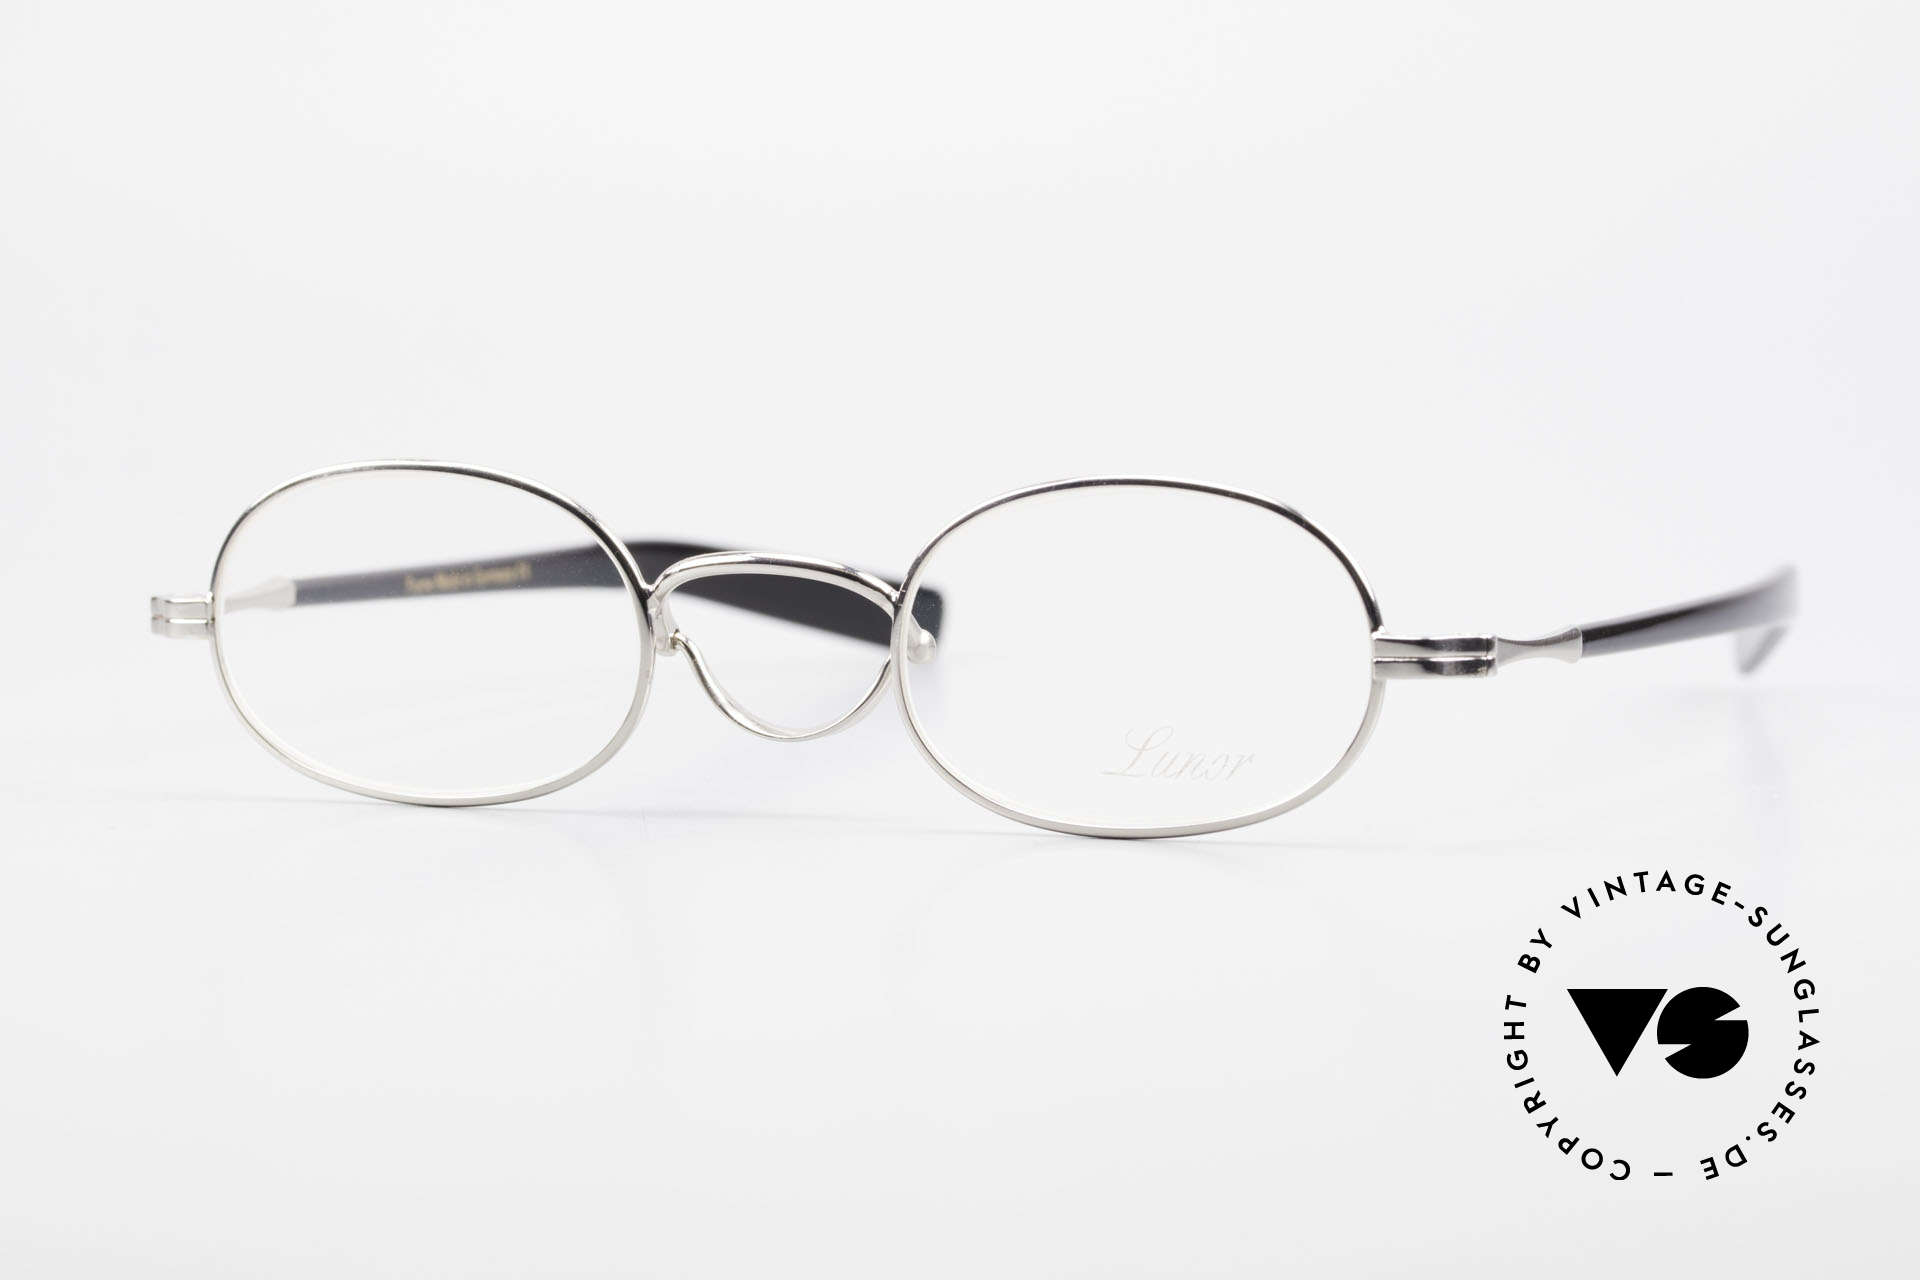 Lunor Swing A 36 Oval Vintage Brille Mit Schwenksteg, LUNOR = französisch für "Lunette d’Or" (Goldbrille), Passend für Herren und Damen